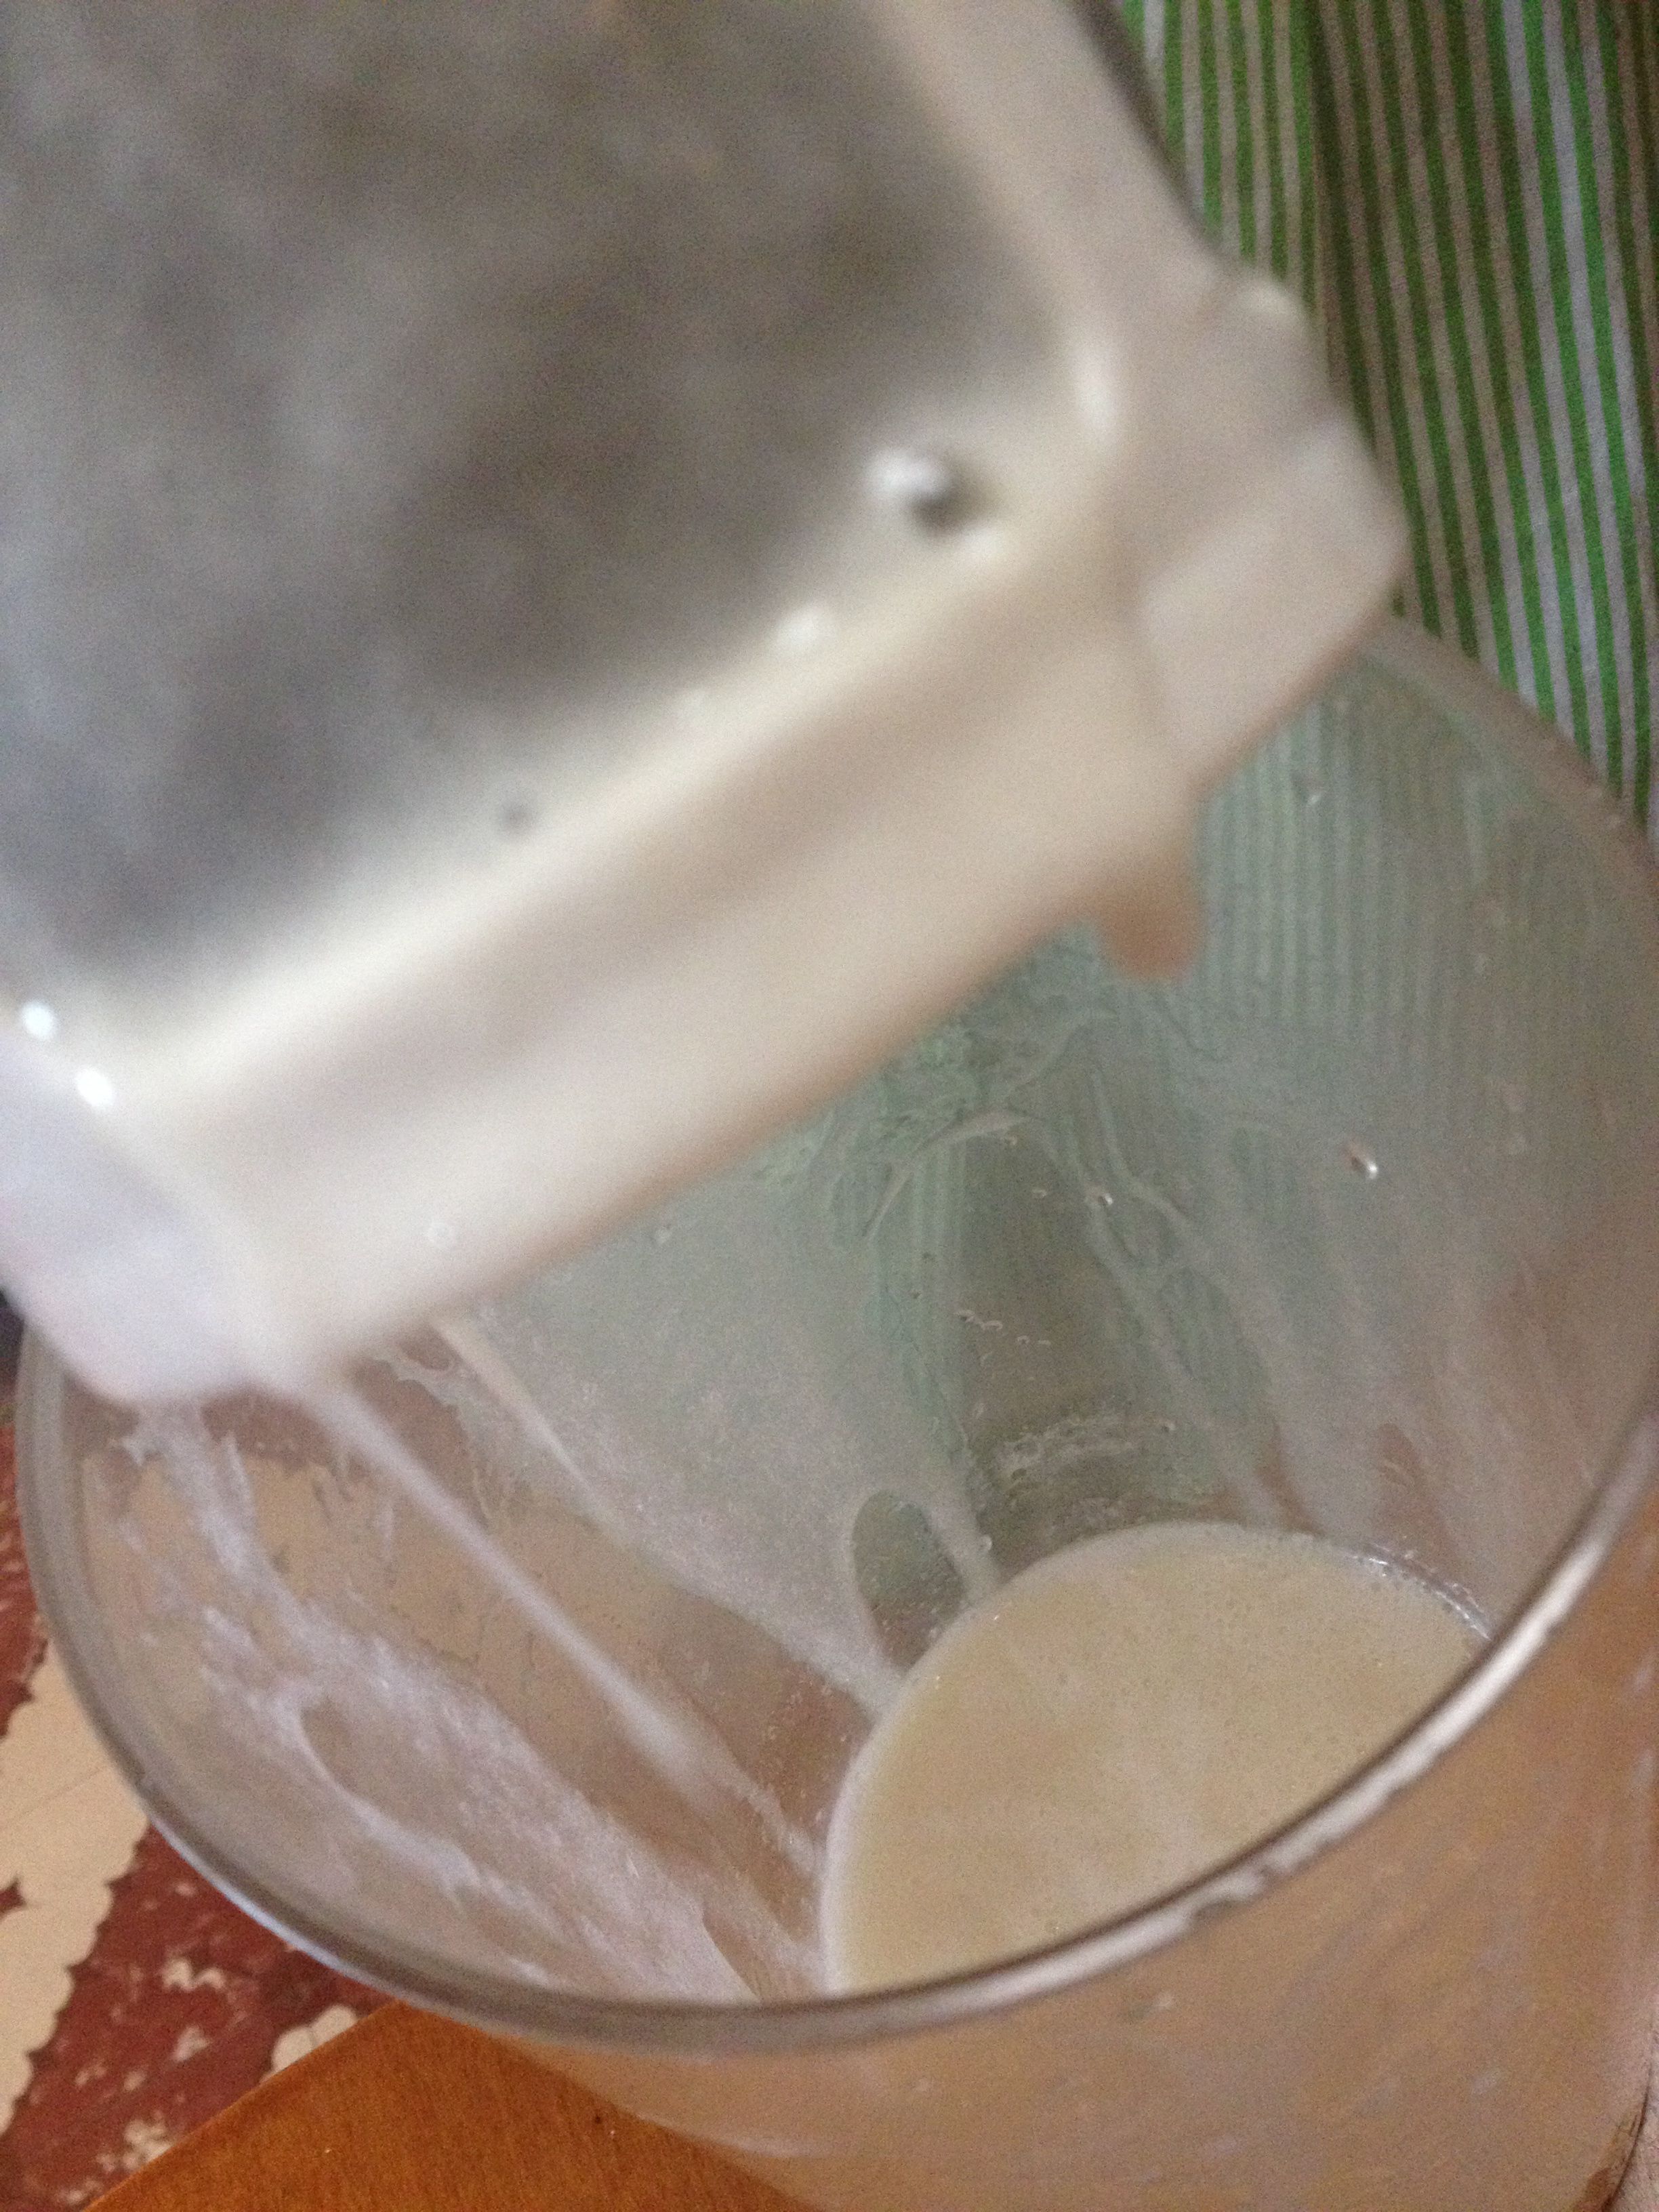 leche de linaza como Filtra por el filtro de vegan milker, se ve un poco espesa